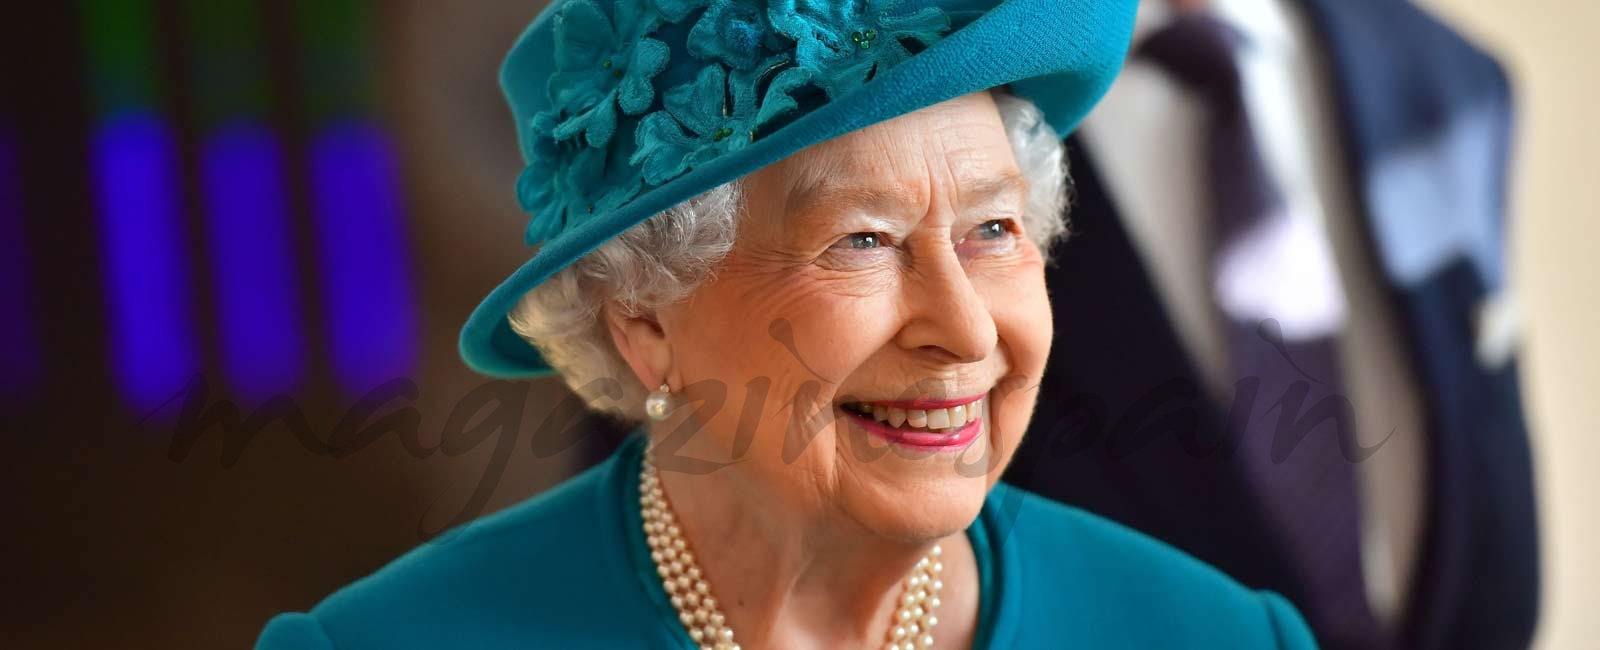 La reina Isabel II de Inglaterra cumple 91 años